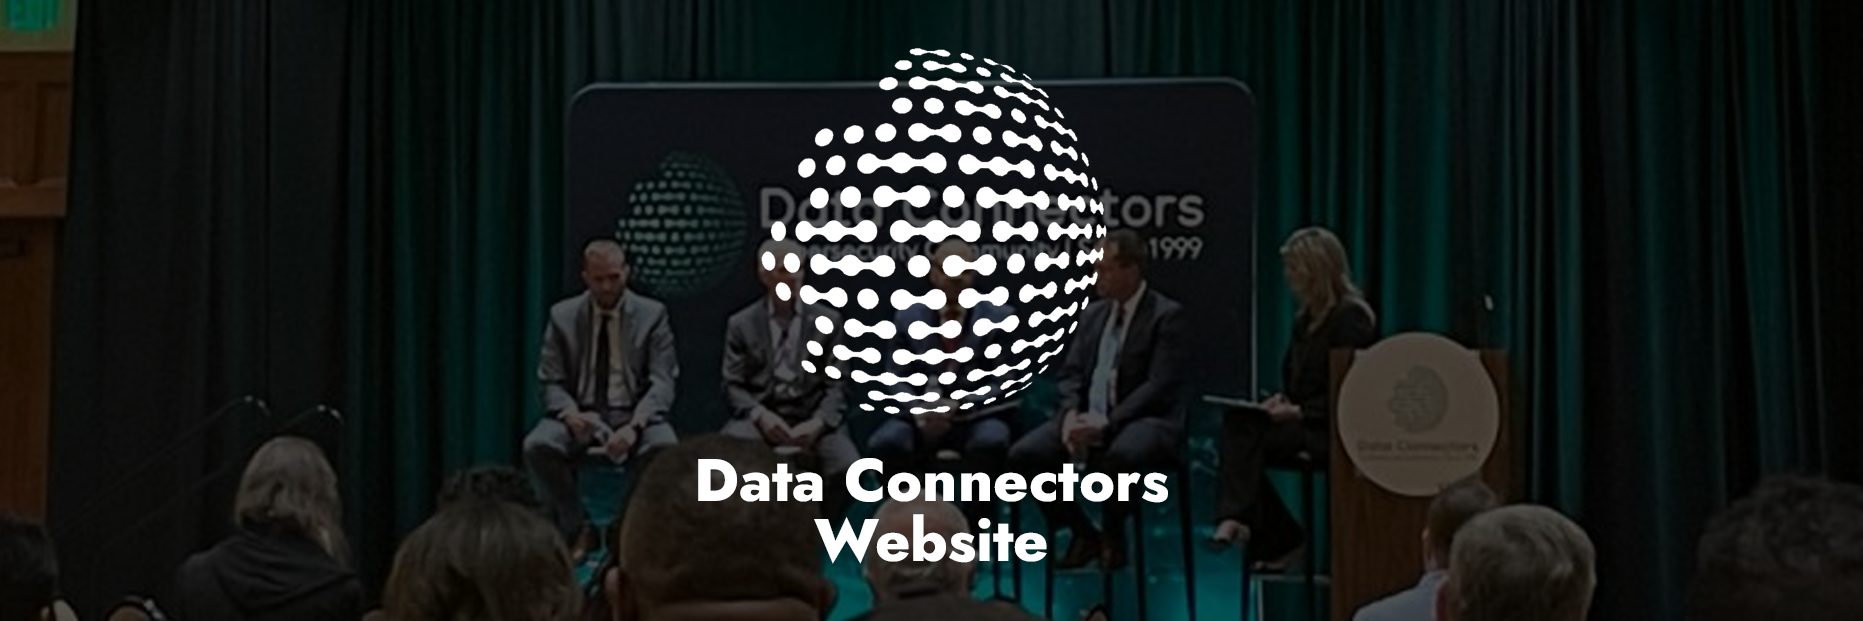 Data Connectors Website